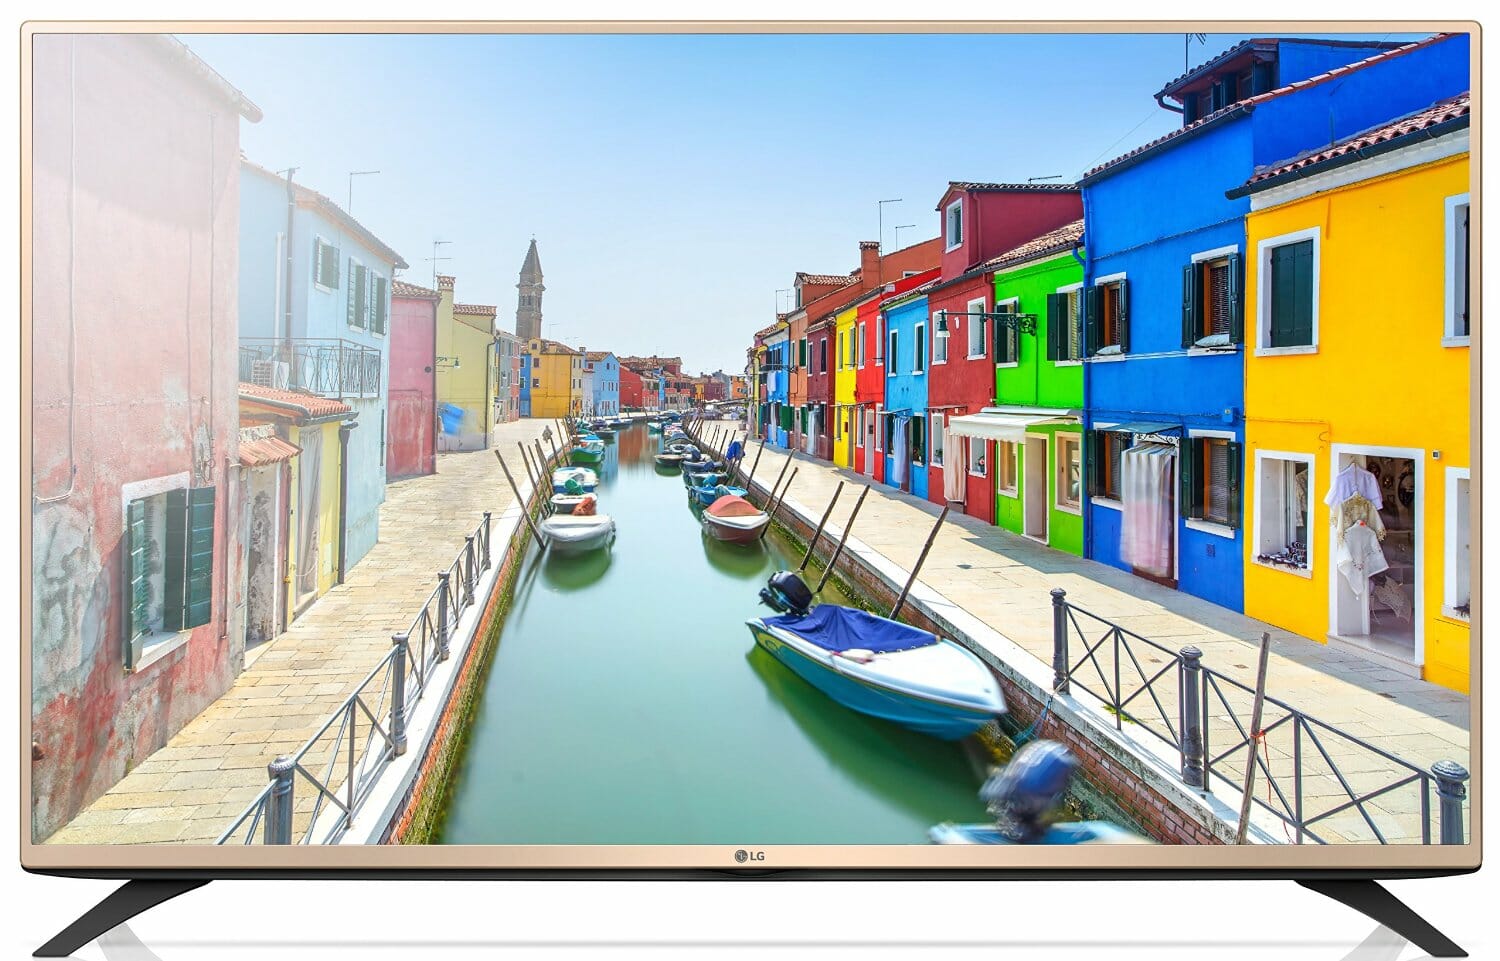 LG 4K Fernseher in den Amazon Angeboten